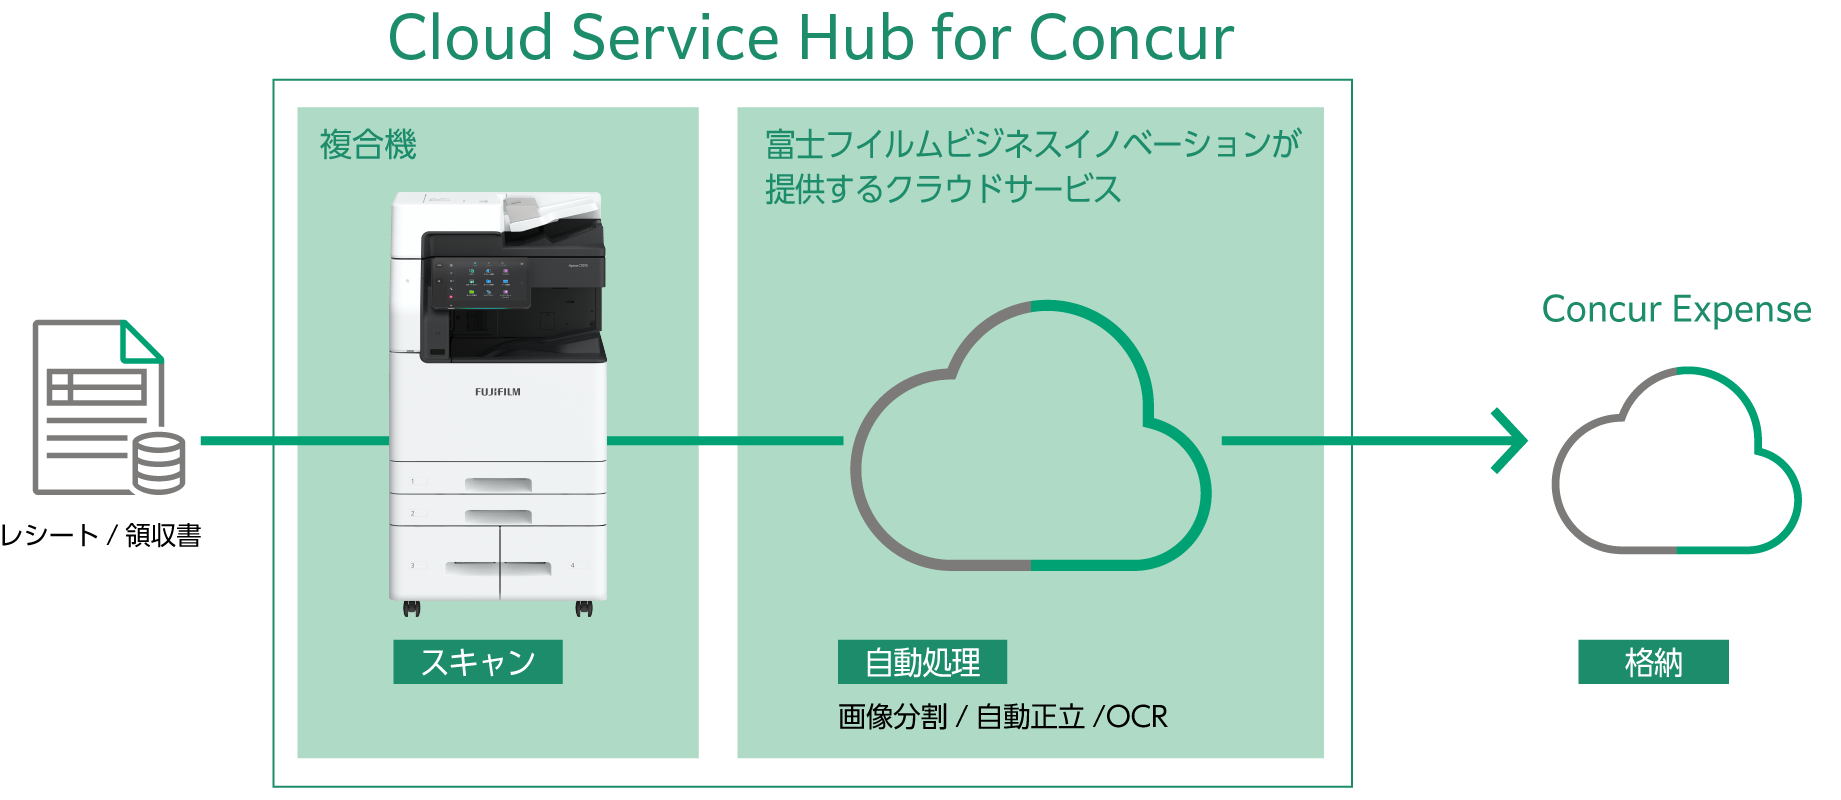 Cloud Service Hub For Concur